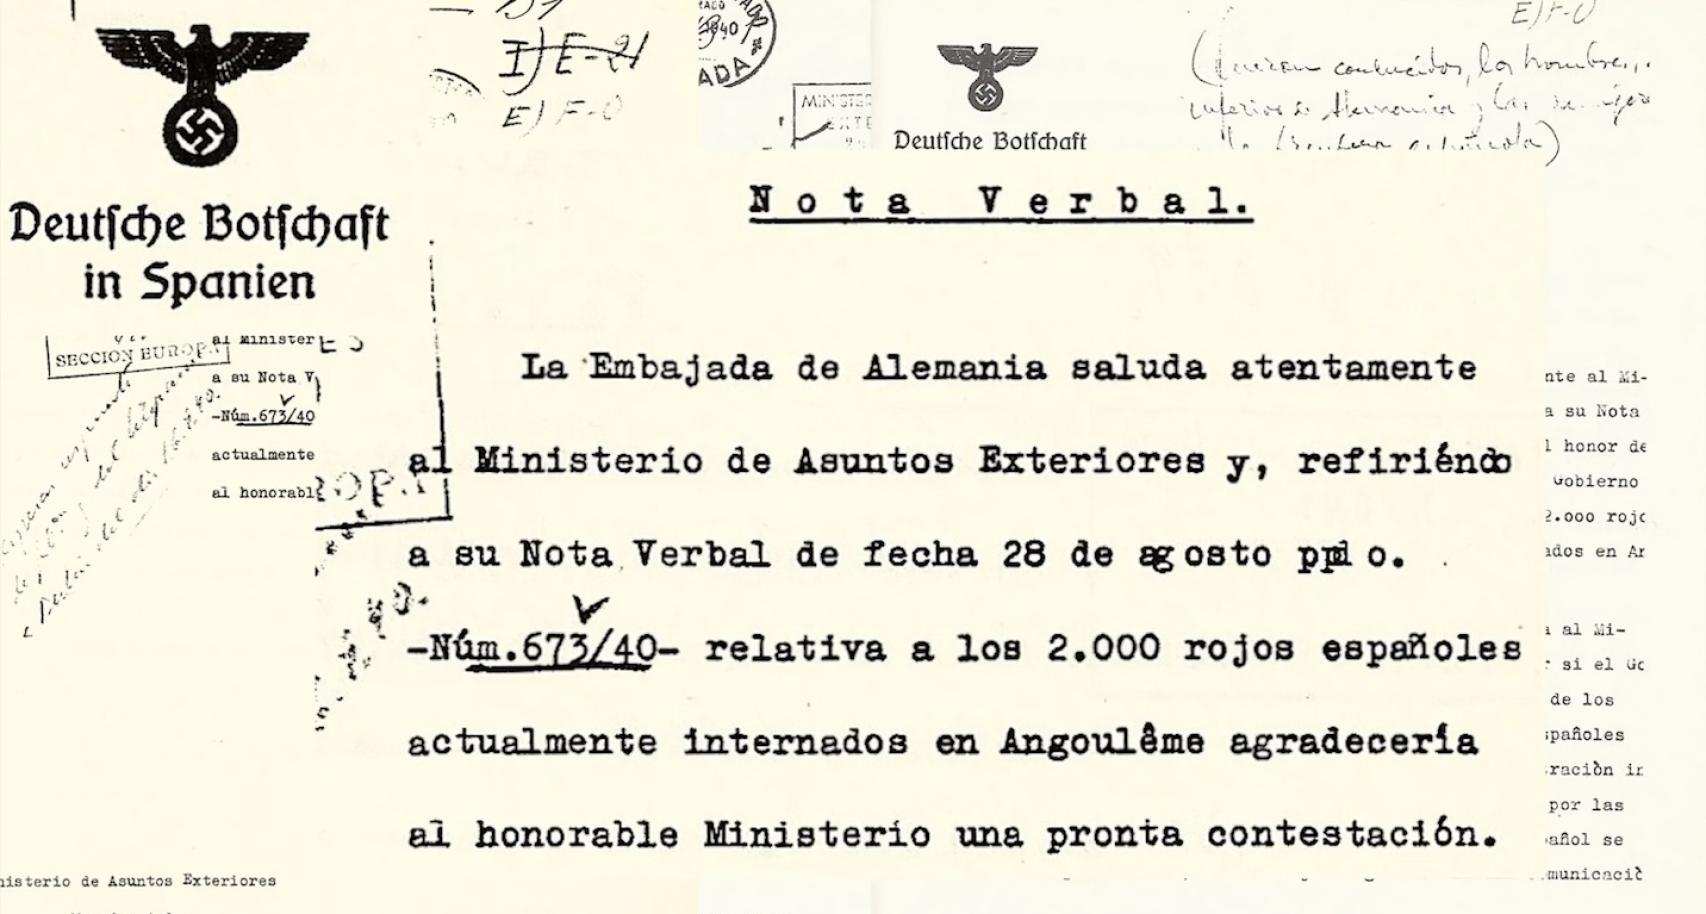 Fotograma de 'Los últimos españoles de Mauthausen', donde se refleja la incertidumbre a la que sumió Franco a los españoles prisioneros tras la carta enviada desde la embajada alemana en España.